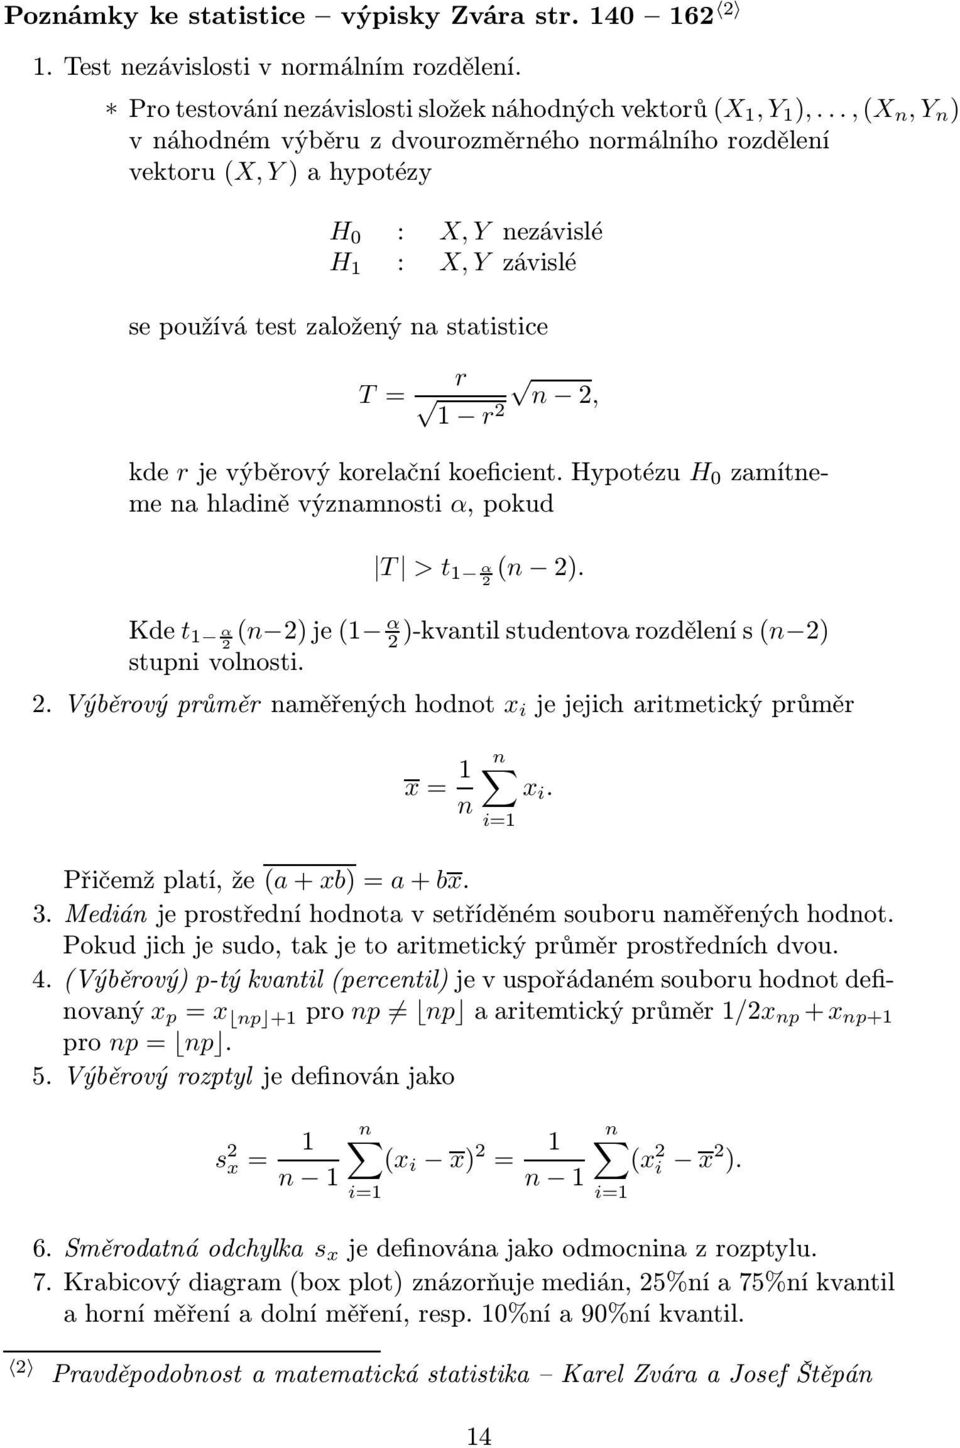 rjevýběrovýkorelačníkoeficient.hypotézu H 0 zamítneme na hladině významnosti α, pokud T > t 1 α(n 2). 2 Kde t 1 α 2 (n 2)je(1 α 2 )-kvantilstudentovarozdělenís(n 2) stupni volnosti. 2.Výběrovýprůměrnaměřenýchhodnot x i jejejicharitmetickýprůměr x= 1 n n x i.